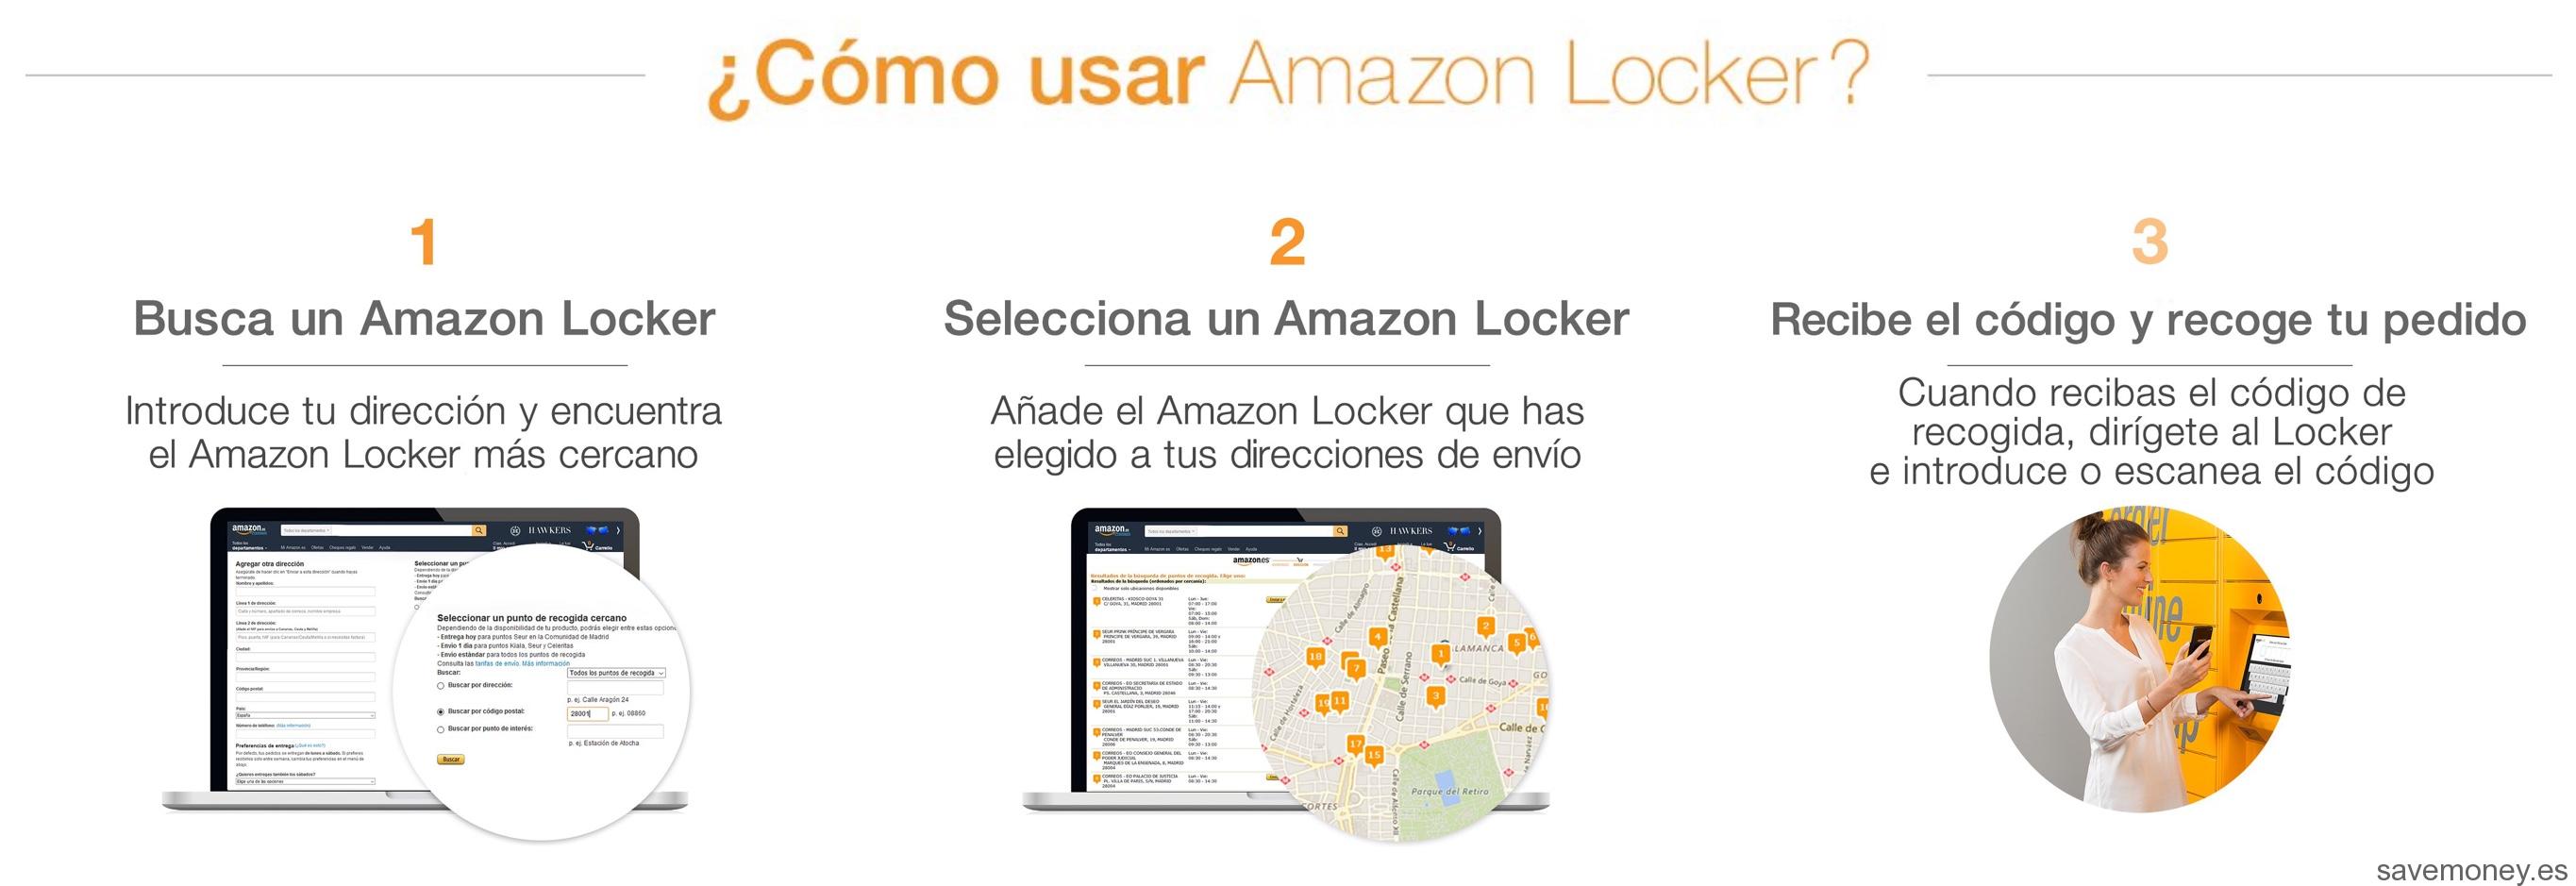 Novedades Amazon: Taquillas Amazon Lockers